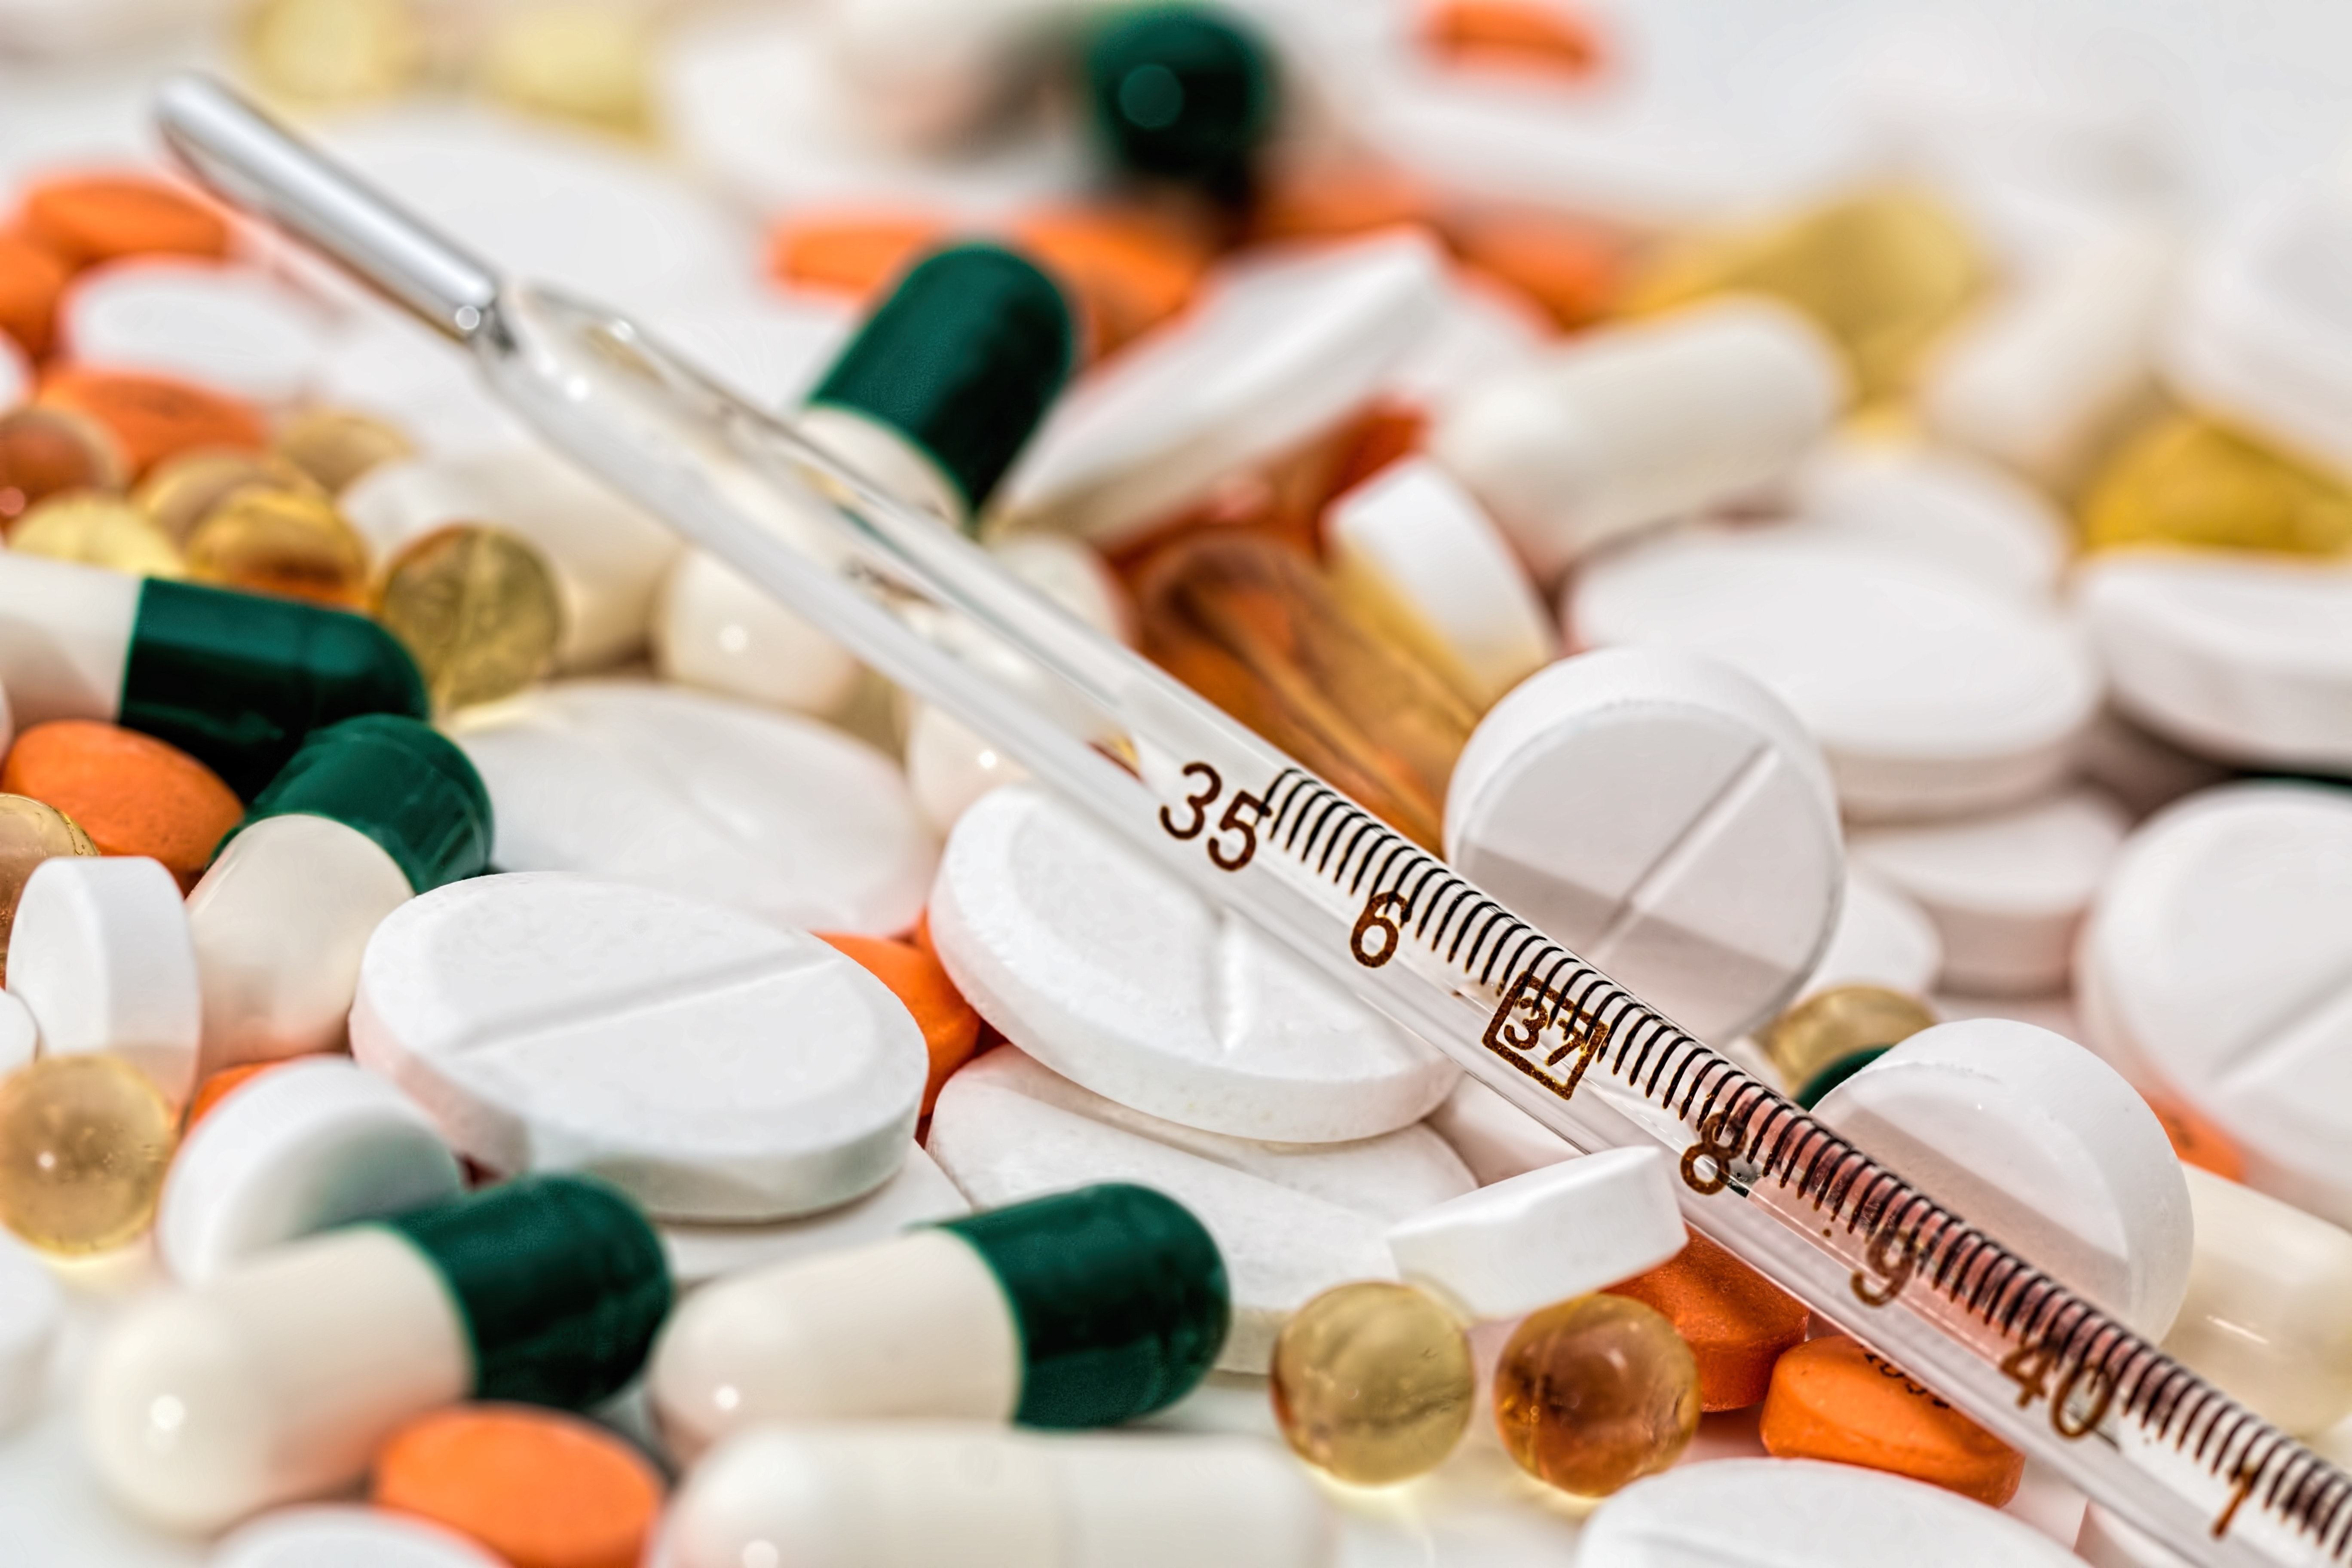 La imagen muestra una colección de medicamentos y un termómetro médico.